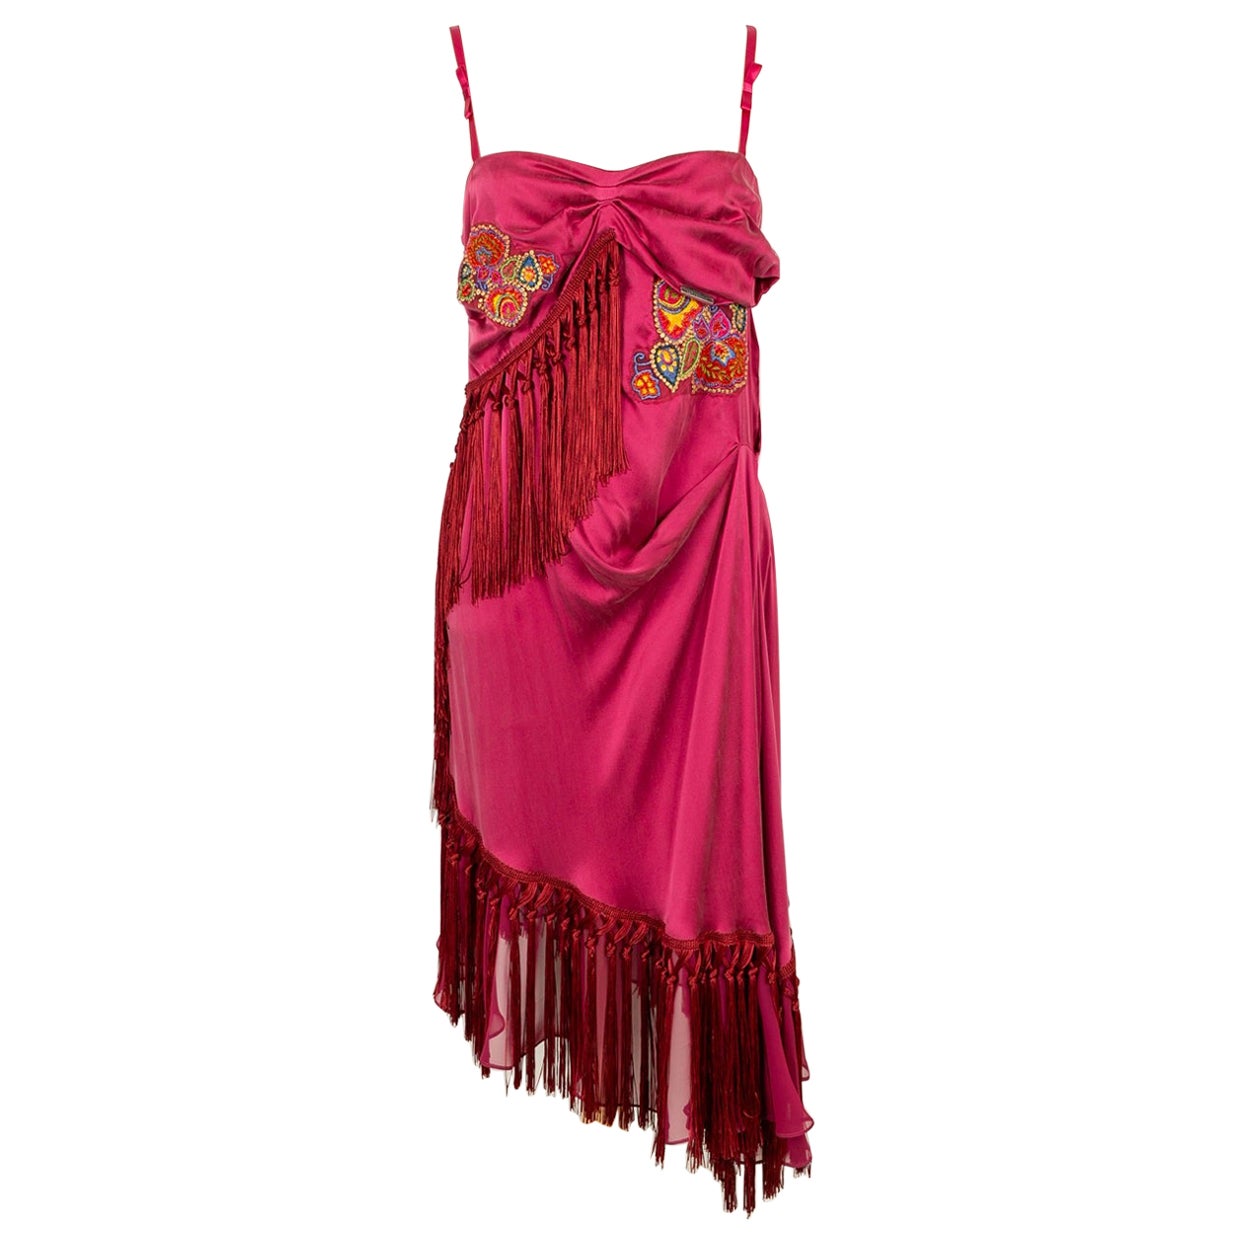 John Galliano Dress in Pink Silk, 2000s